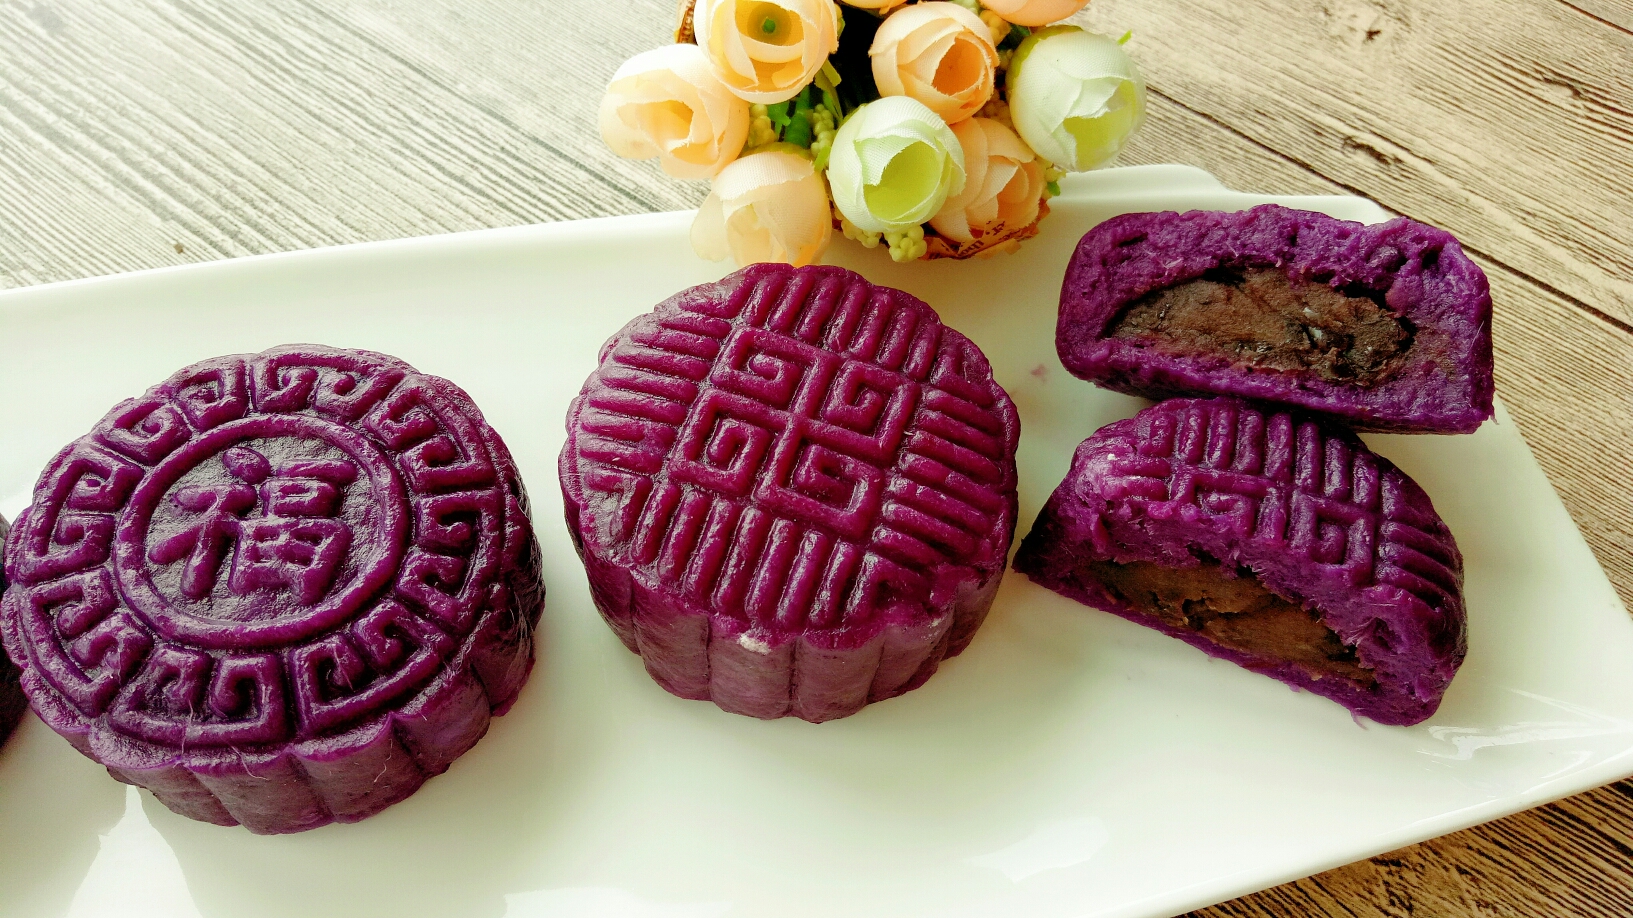 紫薯红豆糕的做法